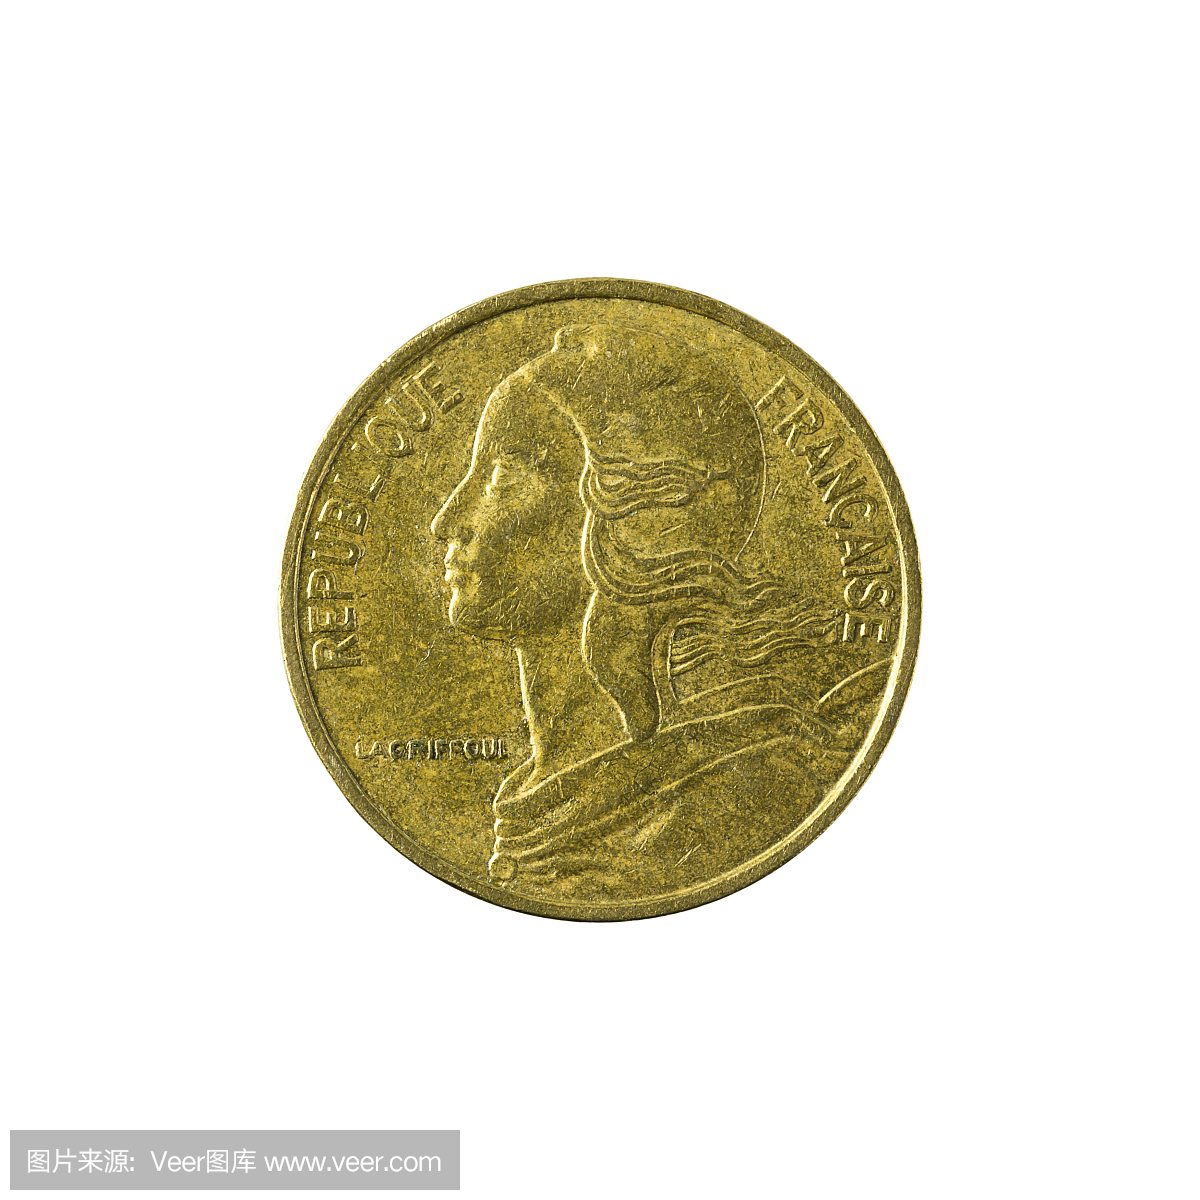 法国硬币,法国法郎硬币,法郎硬币,法国货币